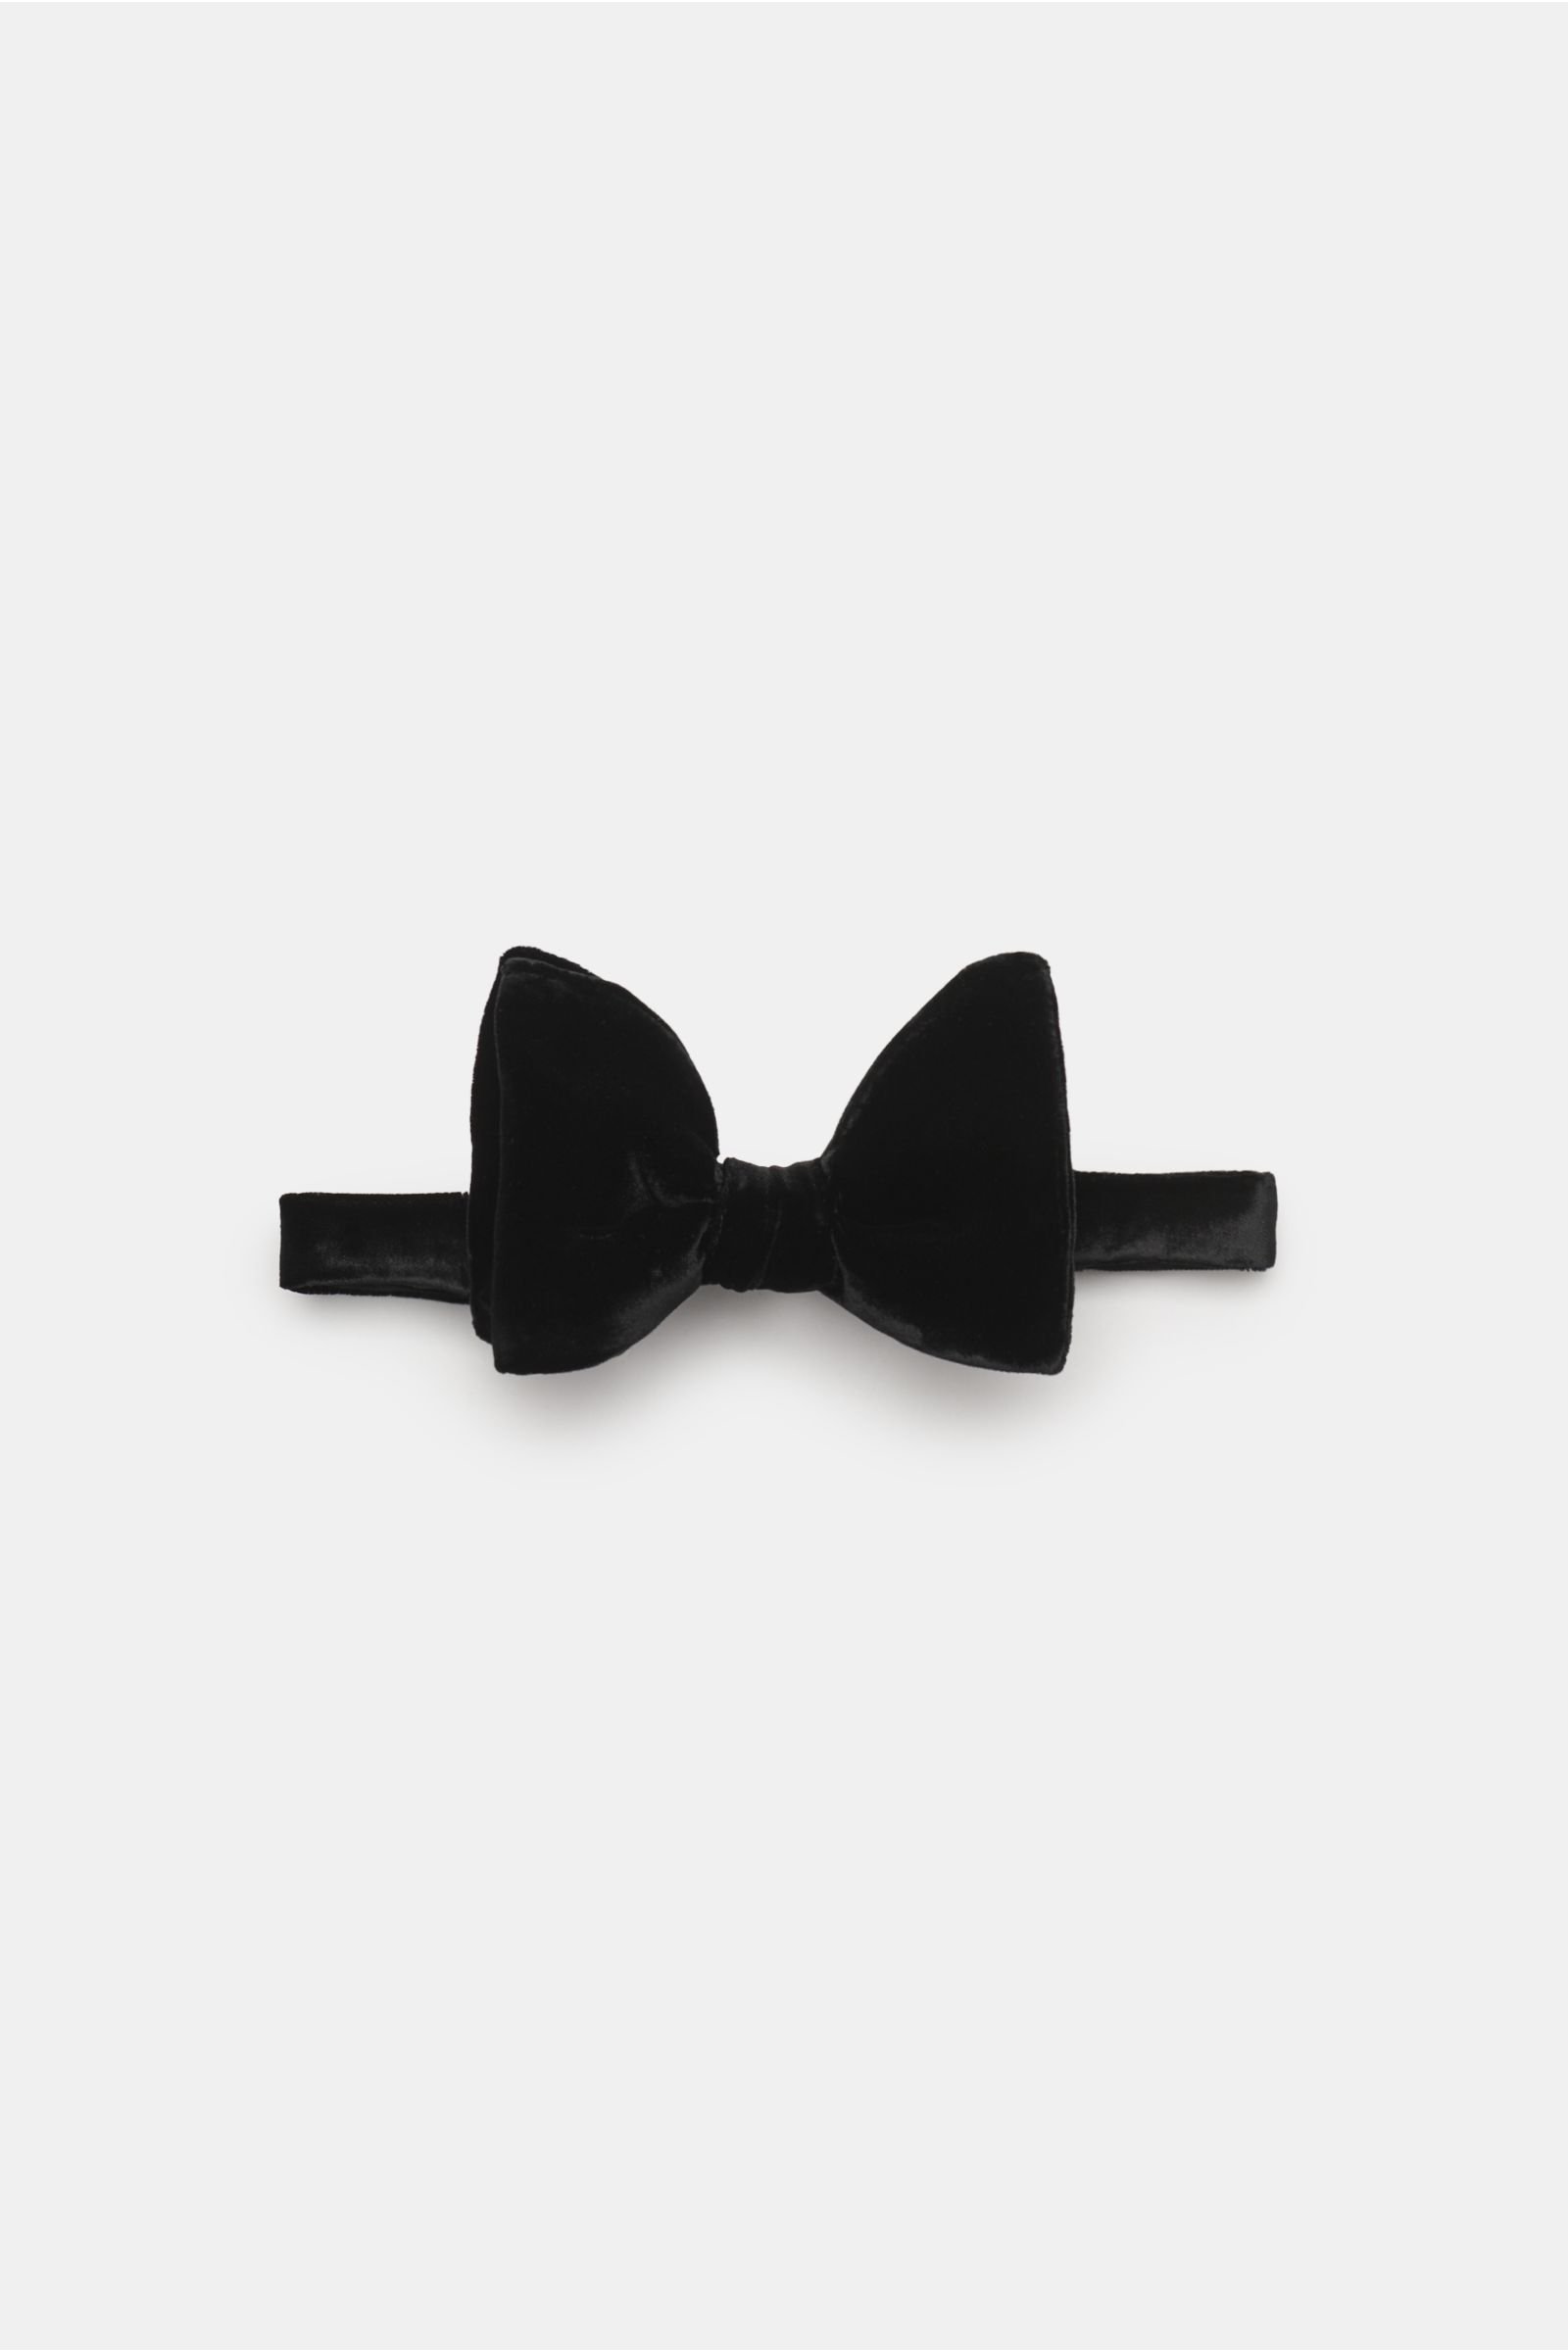 Velvet bow tie black